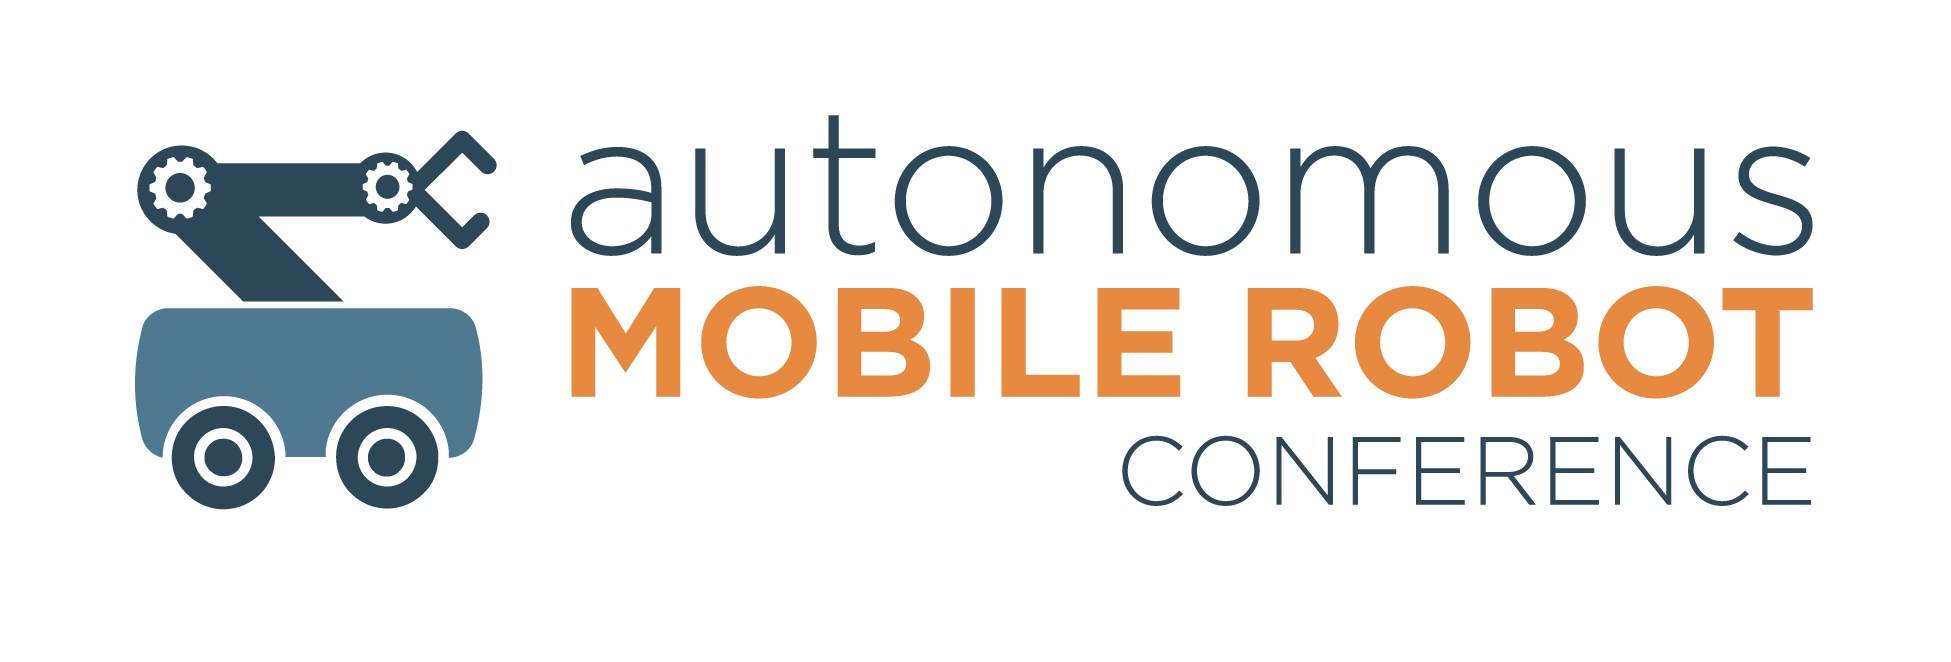 Autonomous Mobile Robots Conference 2020